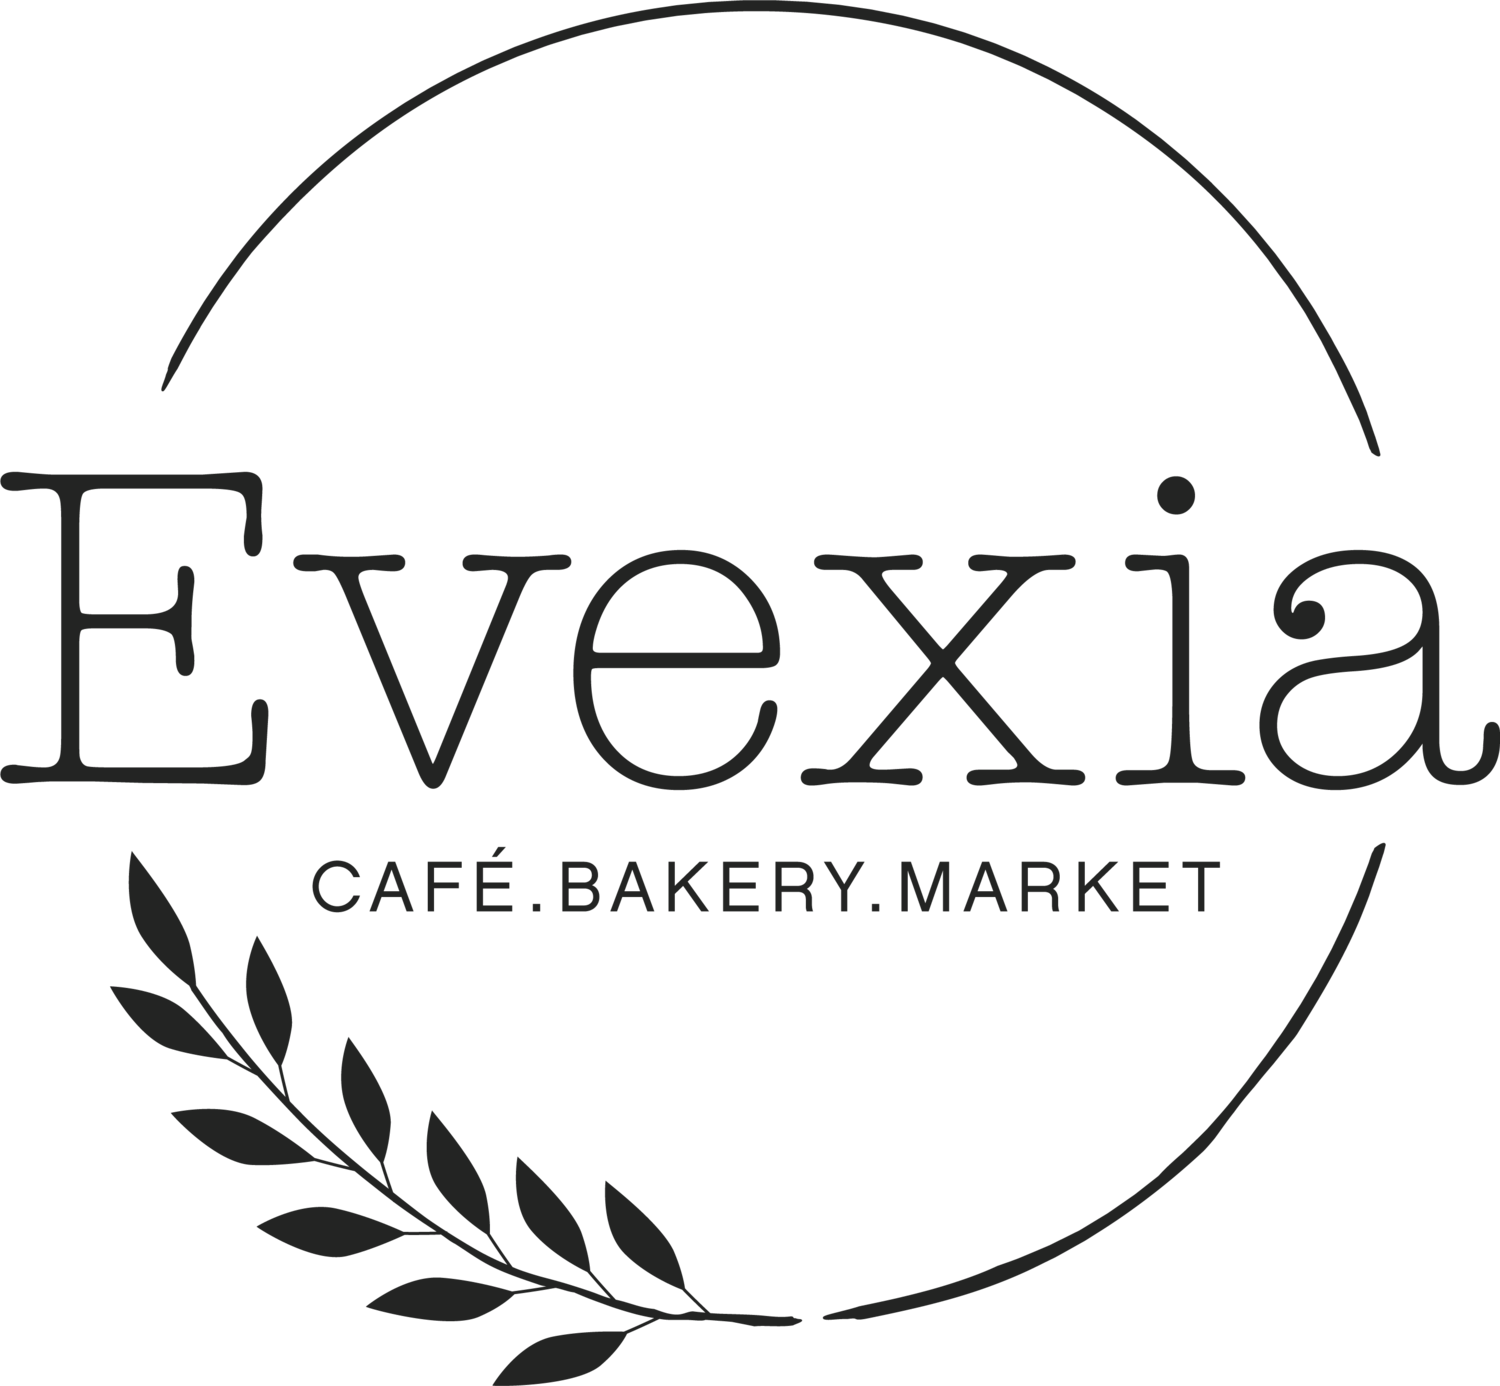 Evexia Café.Bakery.Market